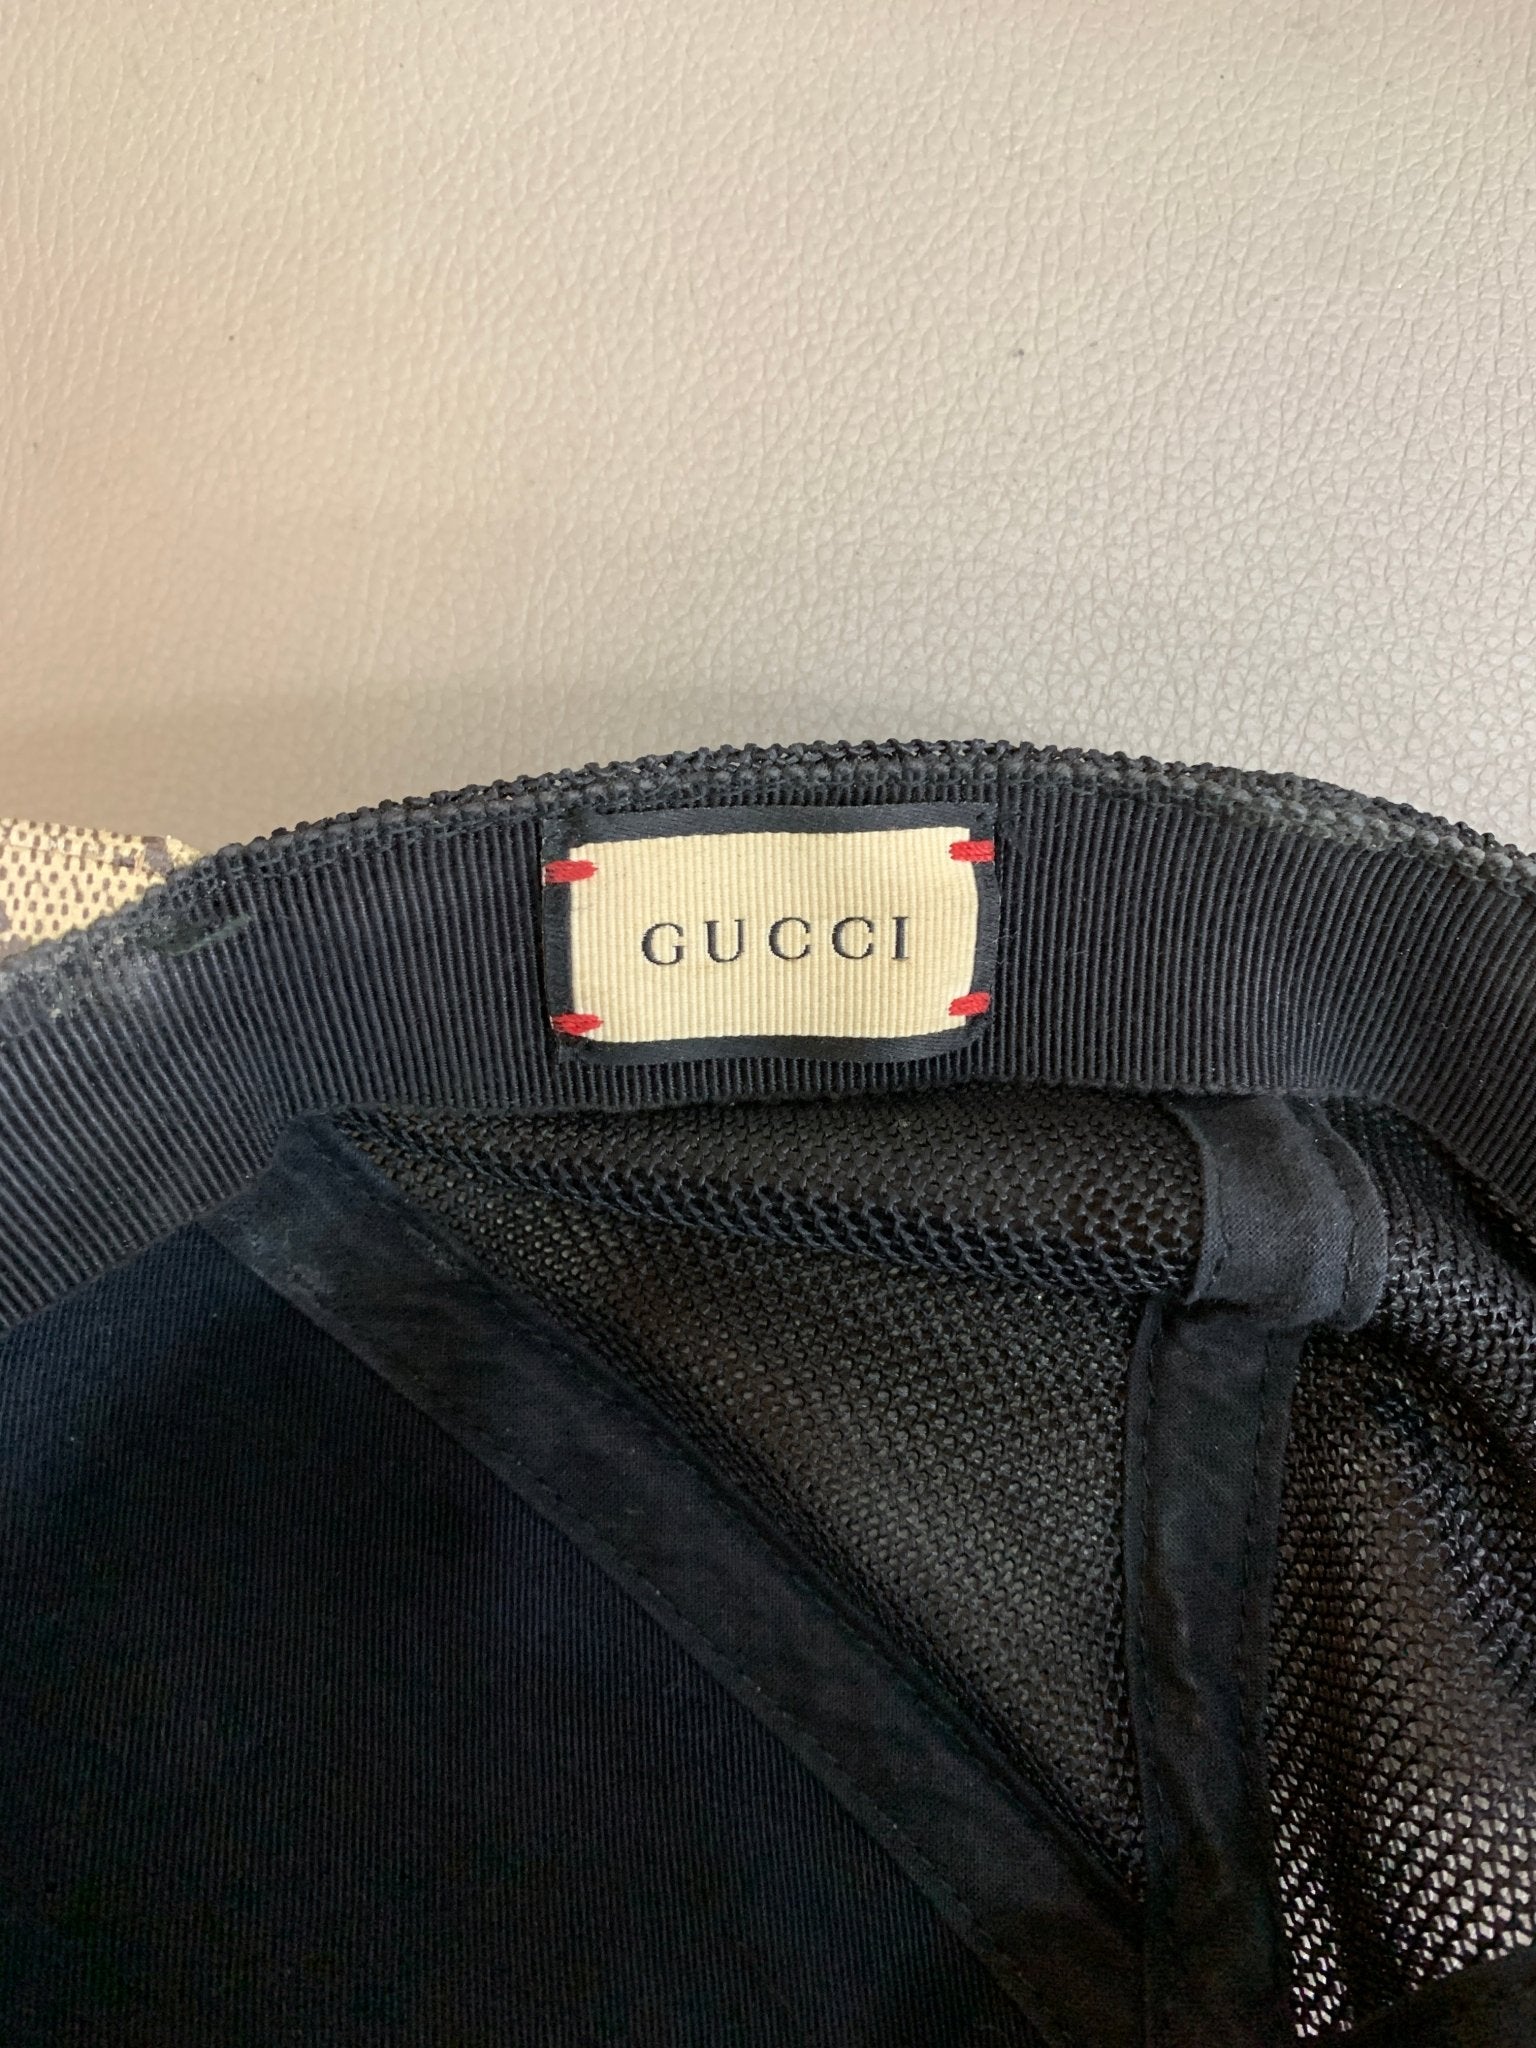 Gucci berretto baseball tg L/59 - AgeVintage